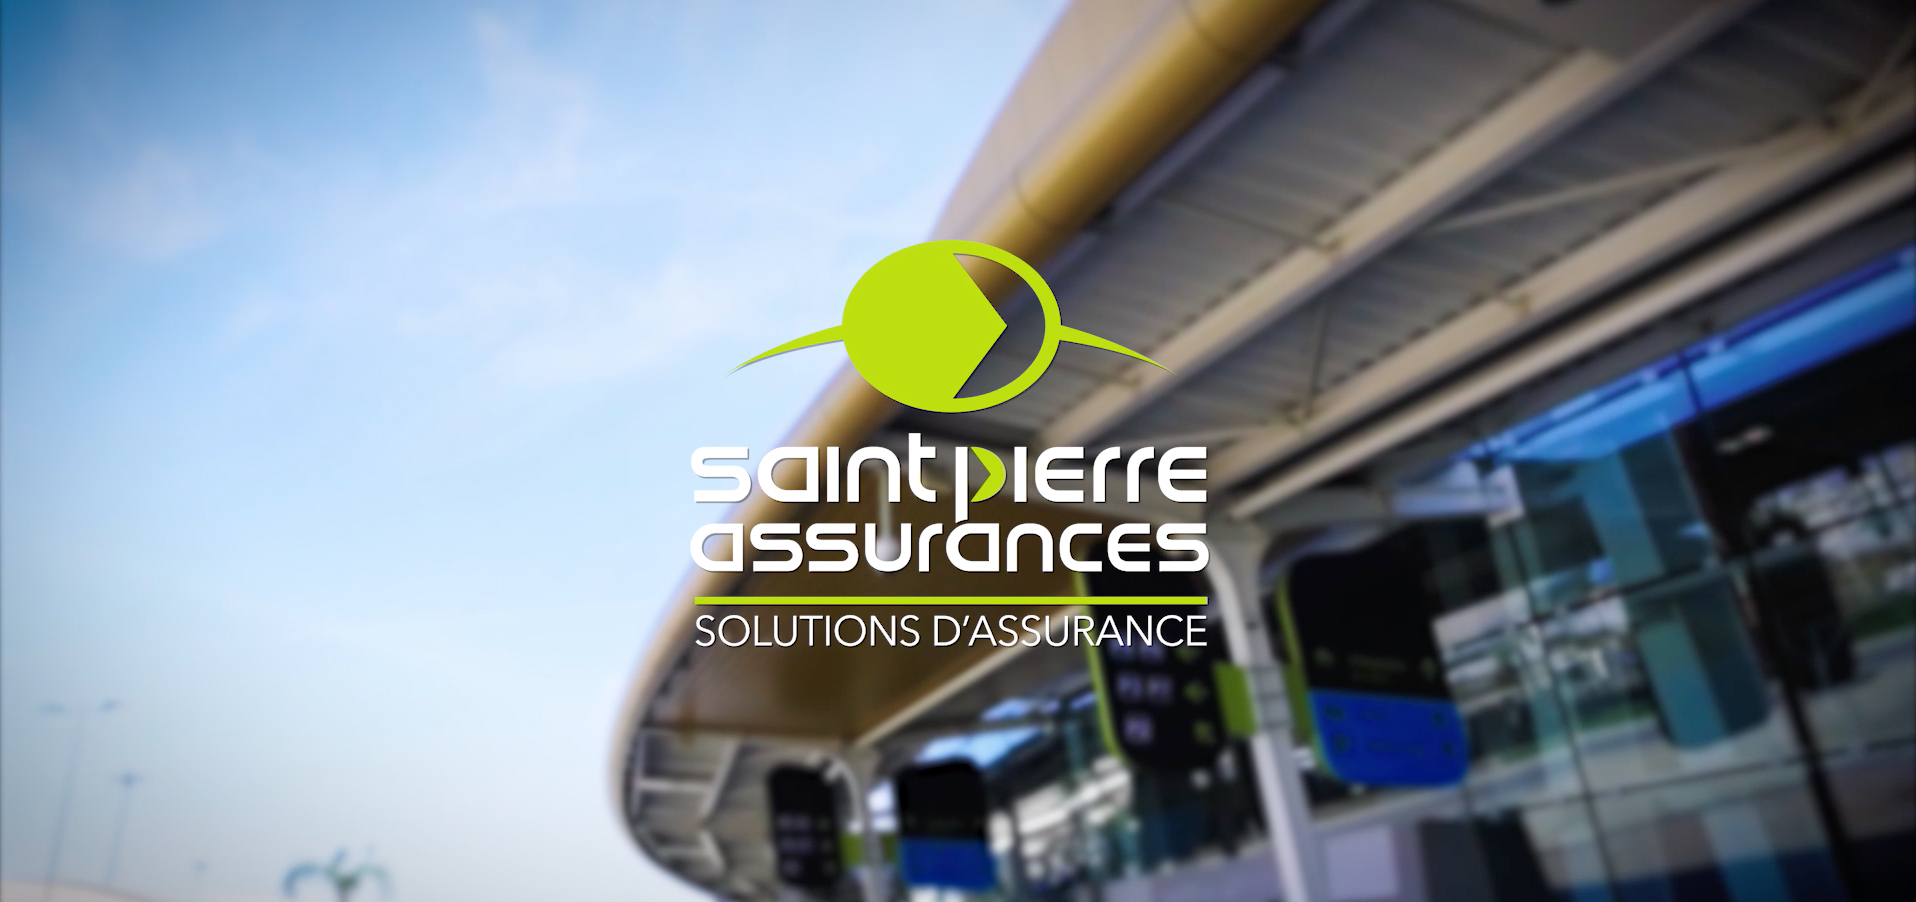 Saint-Pierre Assurances - Convention 2019 - Albufeira